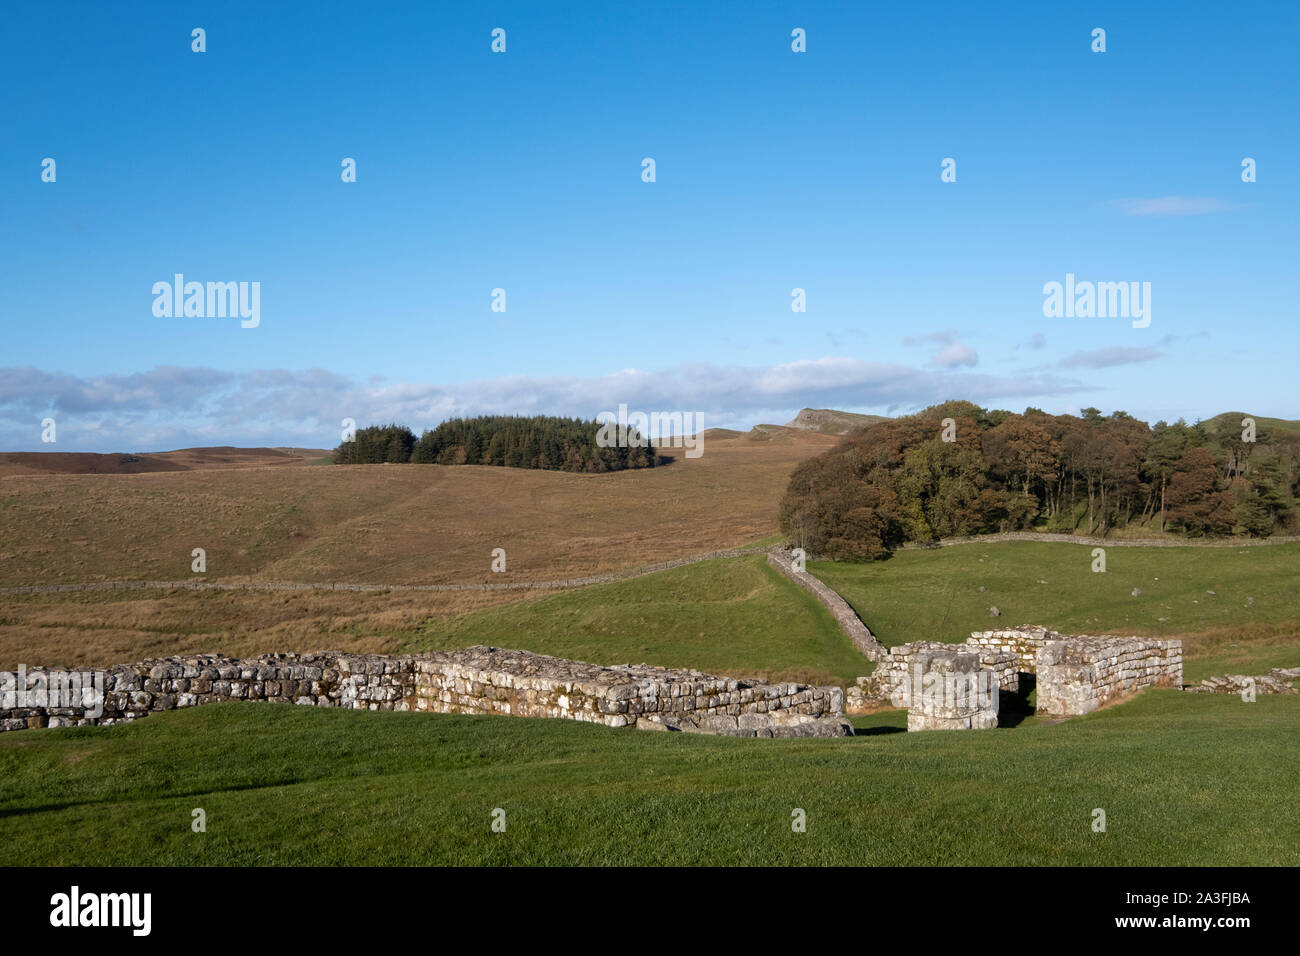 Parete di Adriano, Housesteads, Northumberland, Regno Unito: resti di mura romane che ha separato la Bretagna romana dalla Scozia. Foto Stock